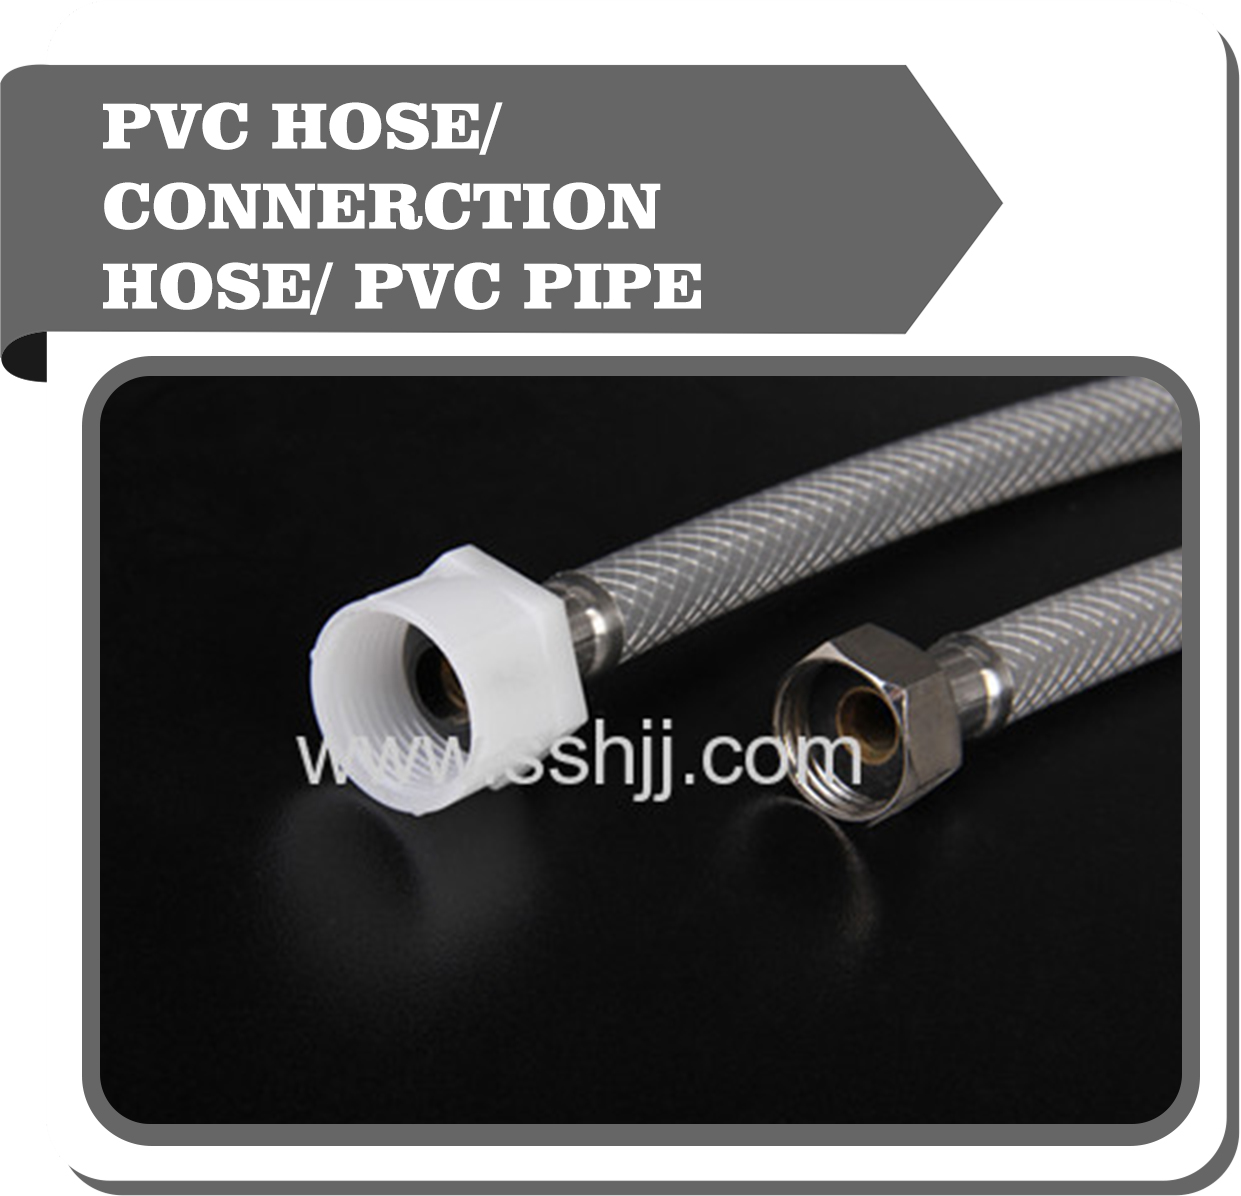 Soft pvc hose/connection hose/pvc pipe